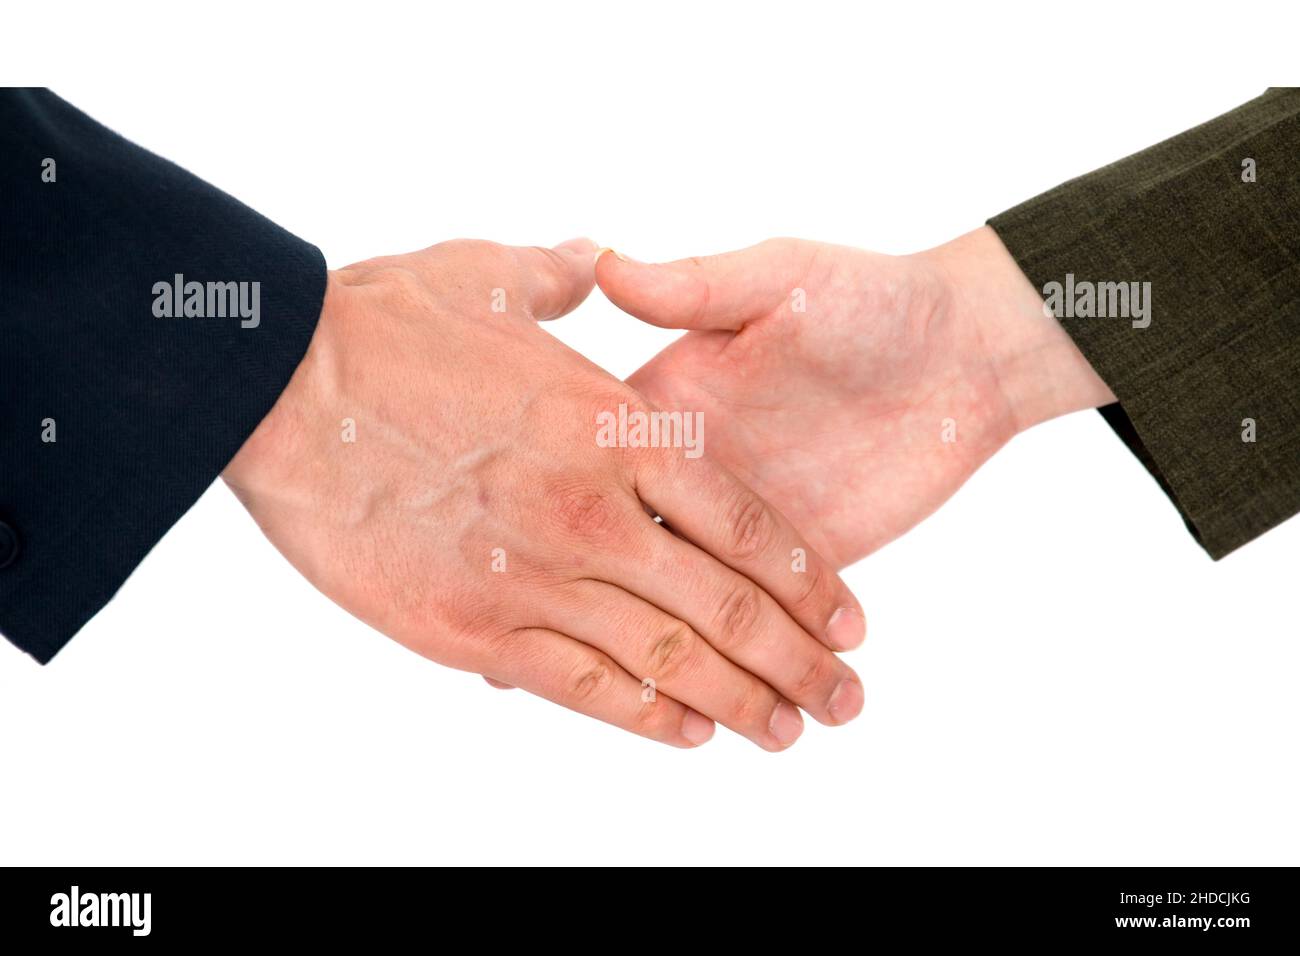 Handschlag zwischen Mann und Frau, Vertrag, Begrüssung, Stock Photo